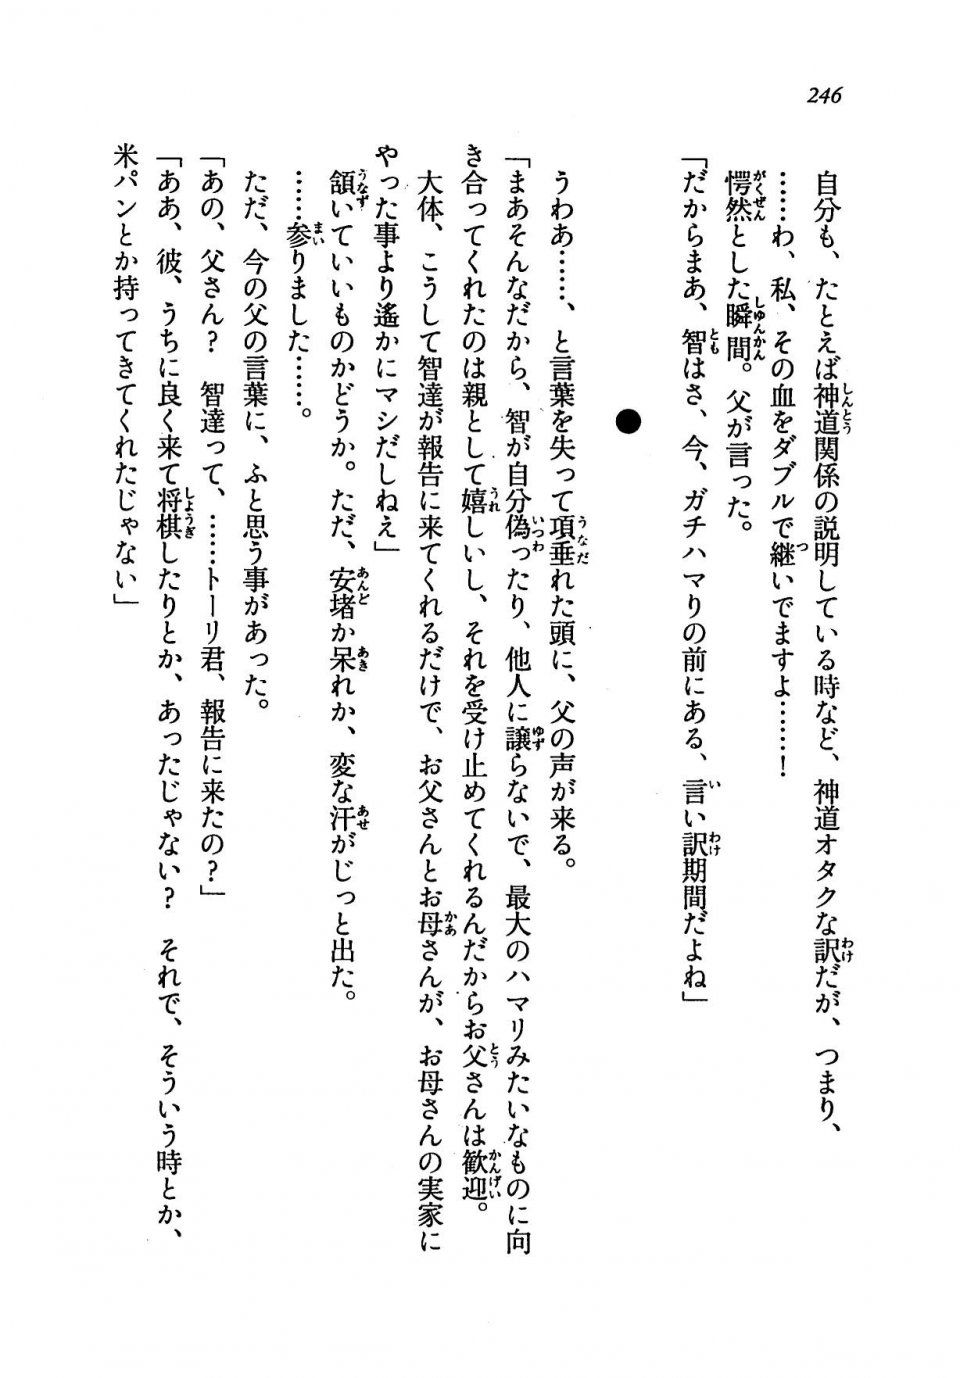 Kyoukai Senjou no Horizon LN Vol 19(8A) - Photo #246